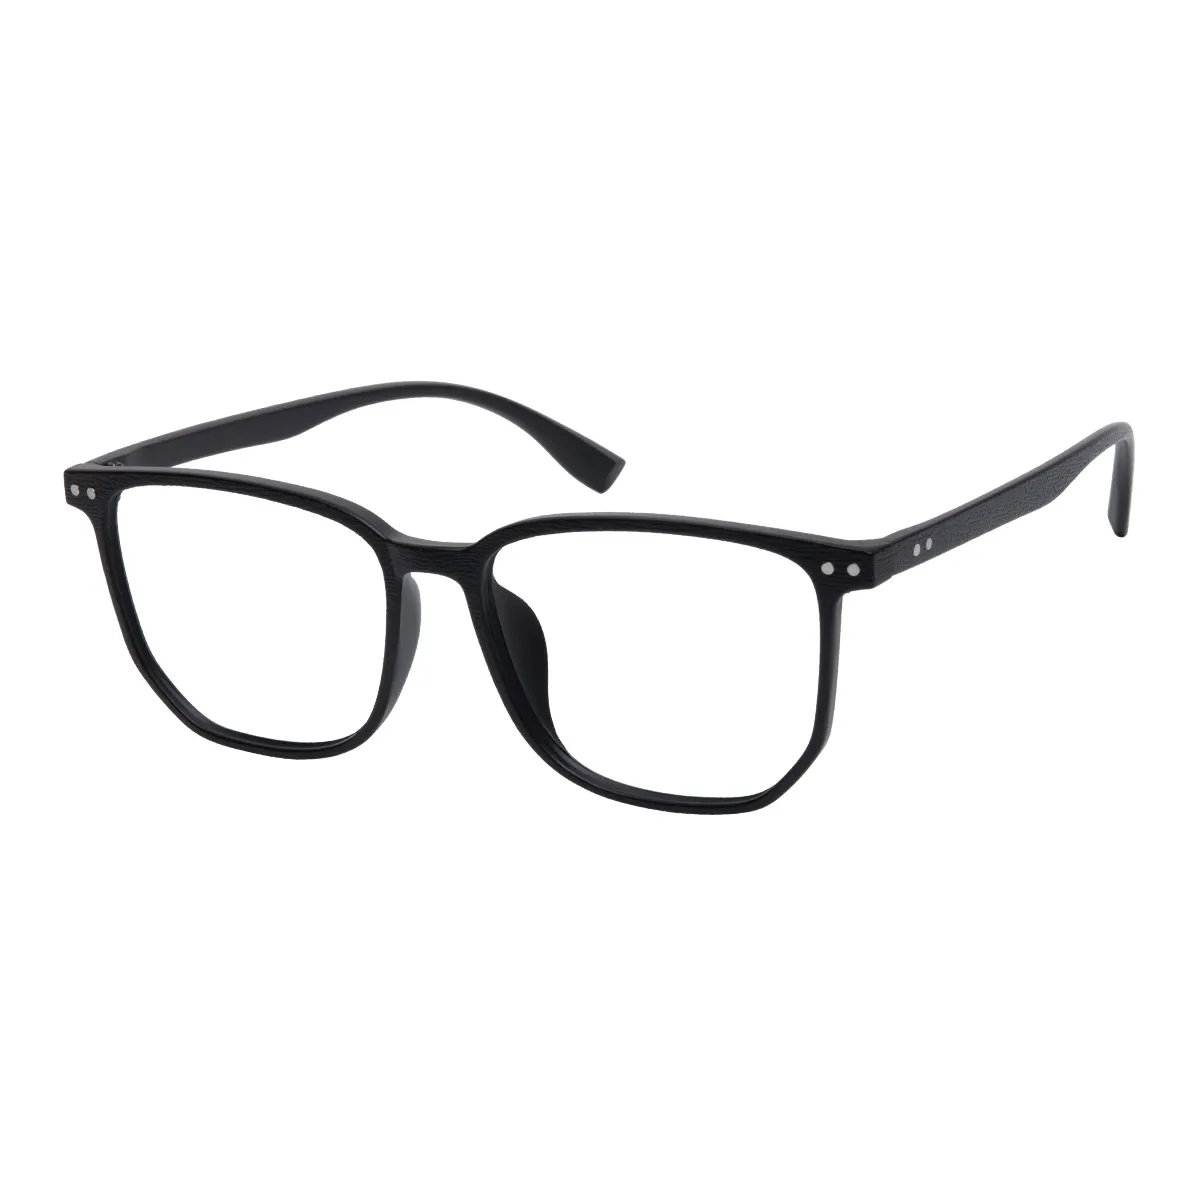 Vega - Square Black Glasses for Men & Women